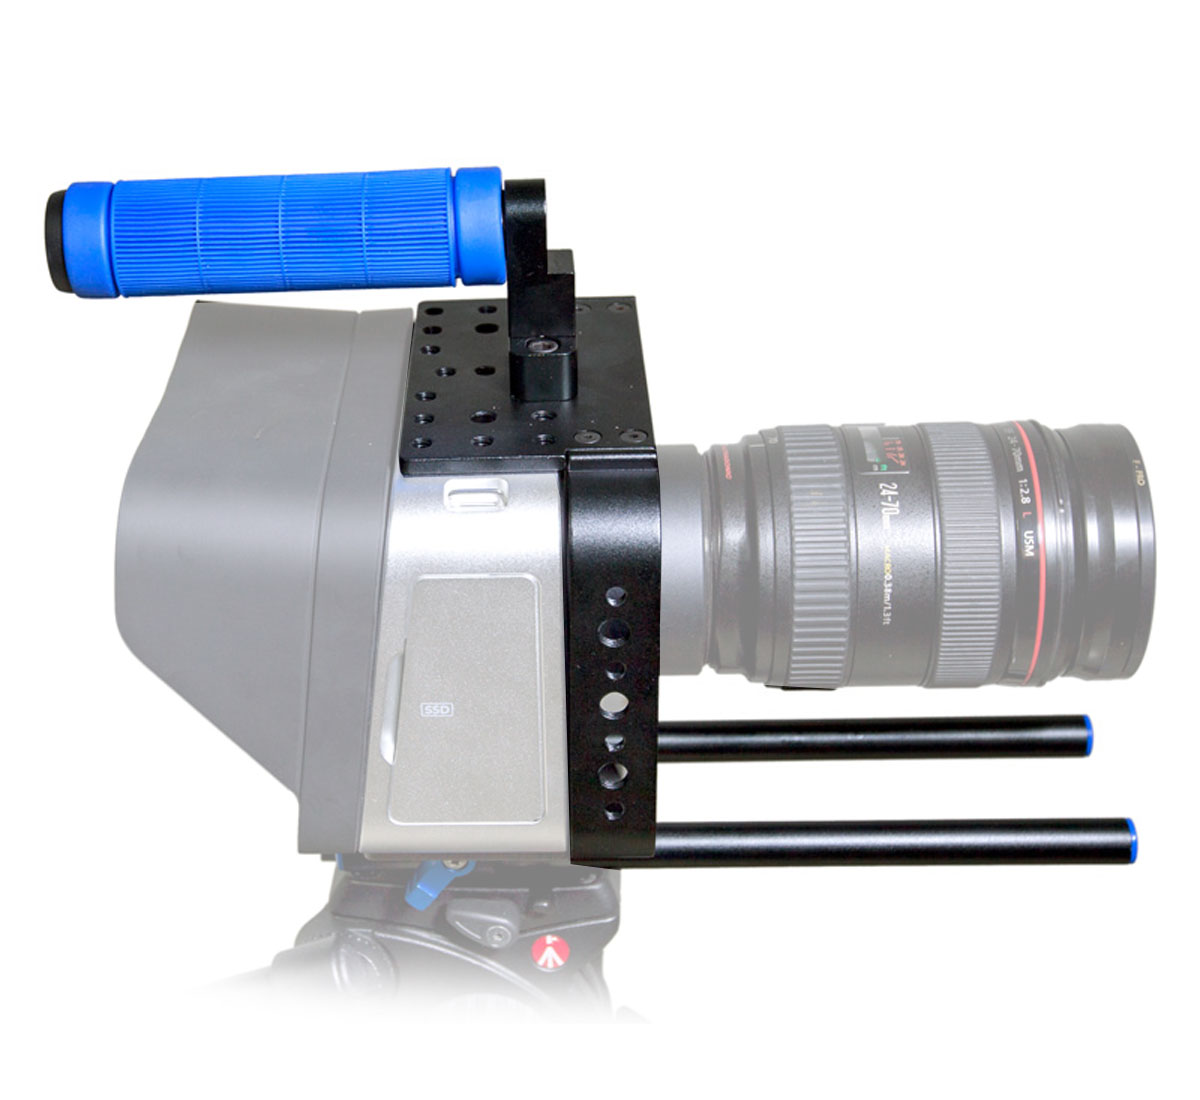 ayex Cage mit Handgriff und Halterungssystem für Blackmagic Cinema Camera